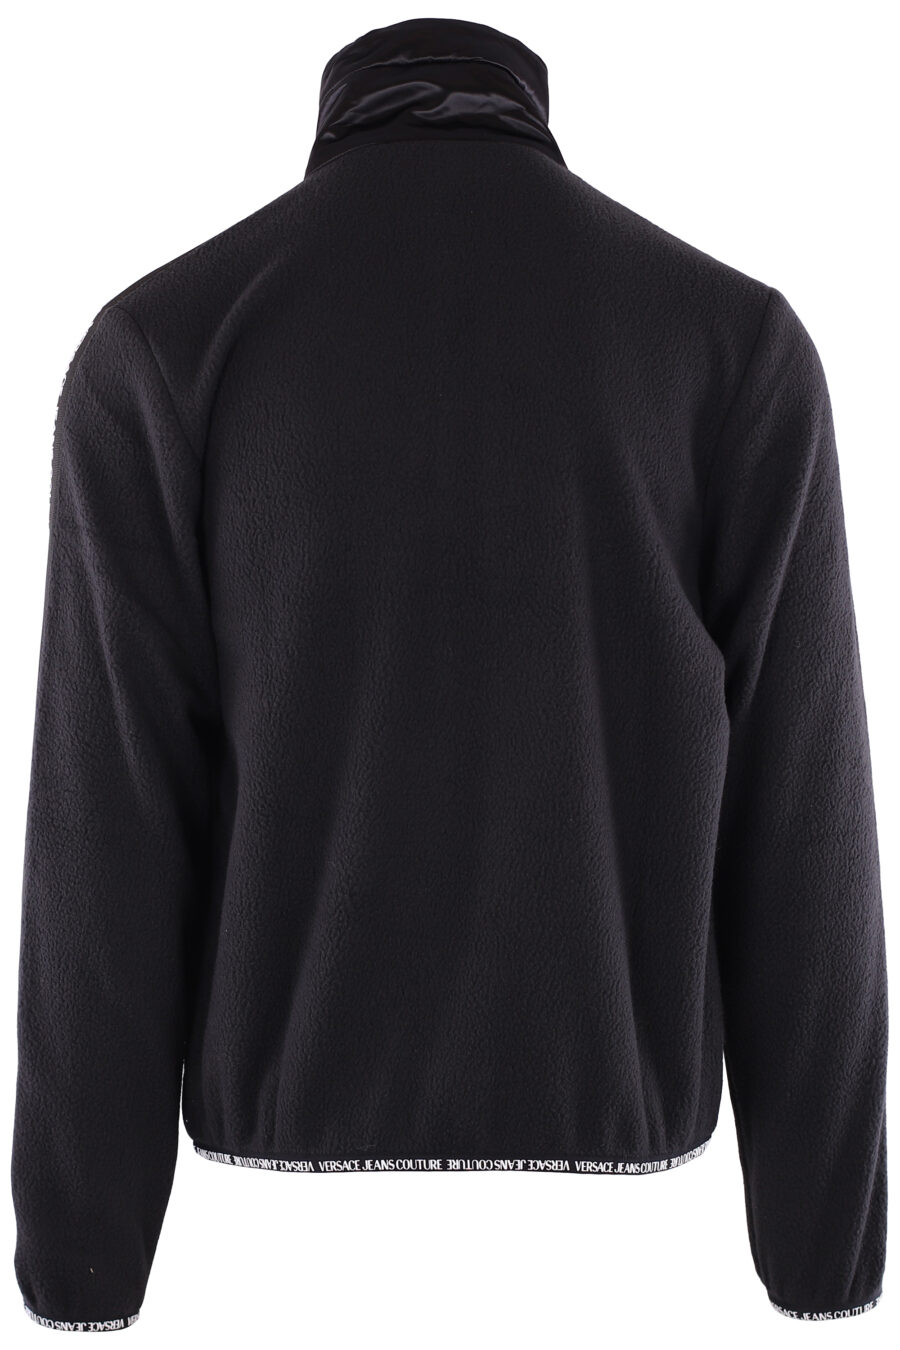 Camisola de lã preta com logótipo de fita nas mangas - IMG 6373